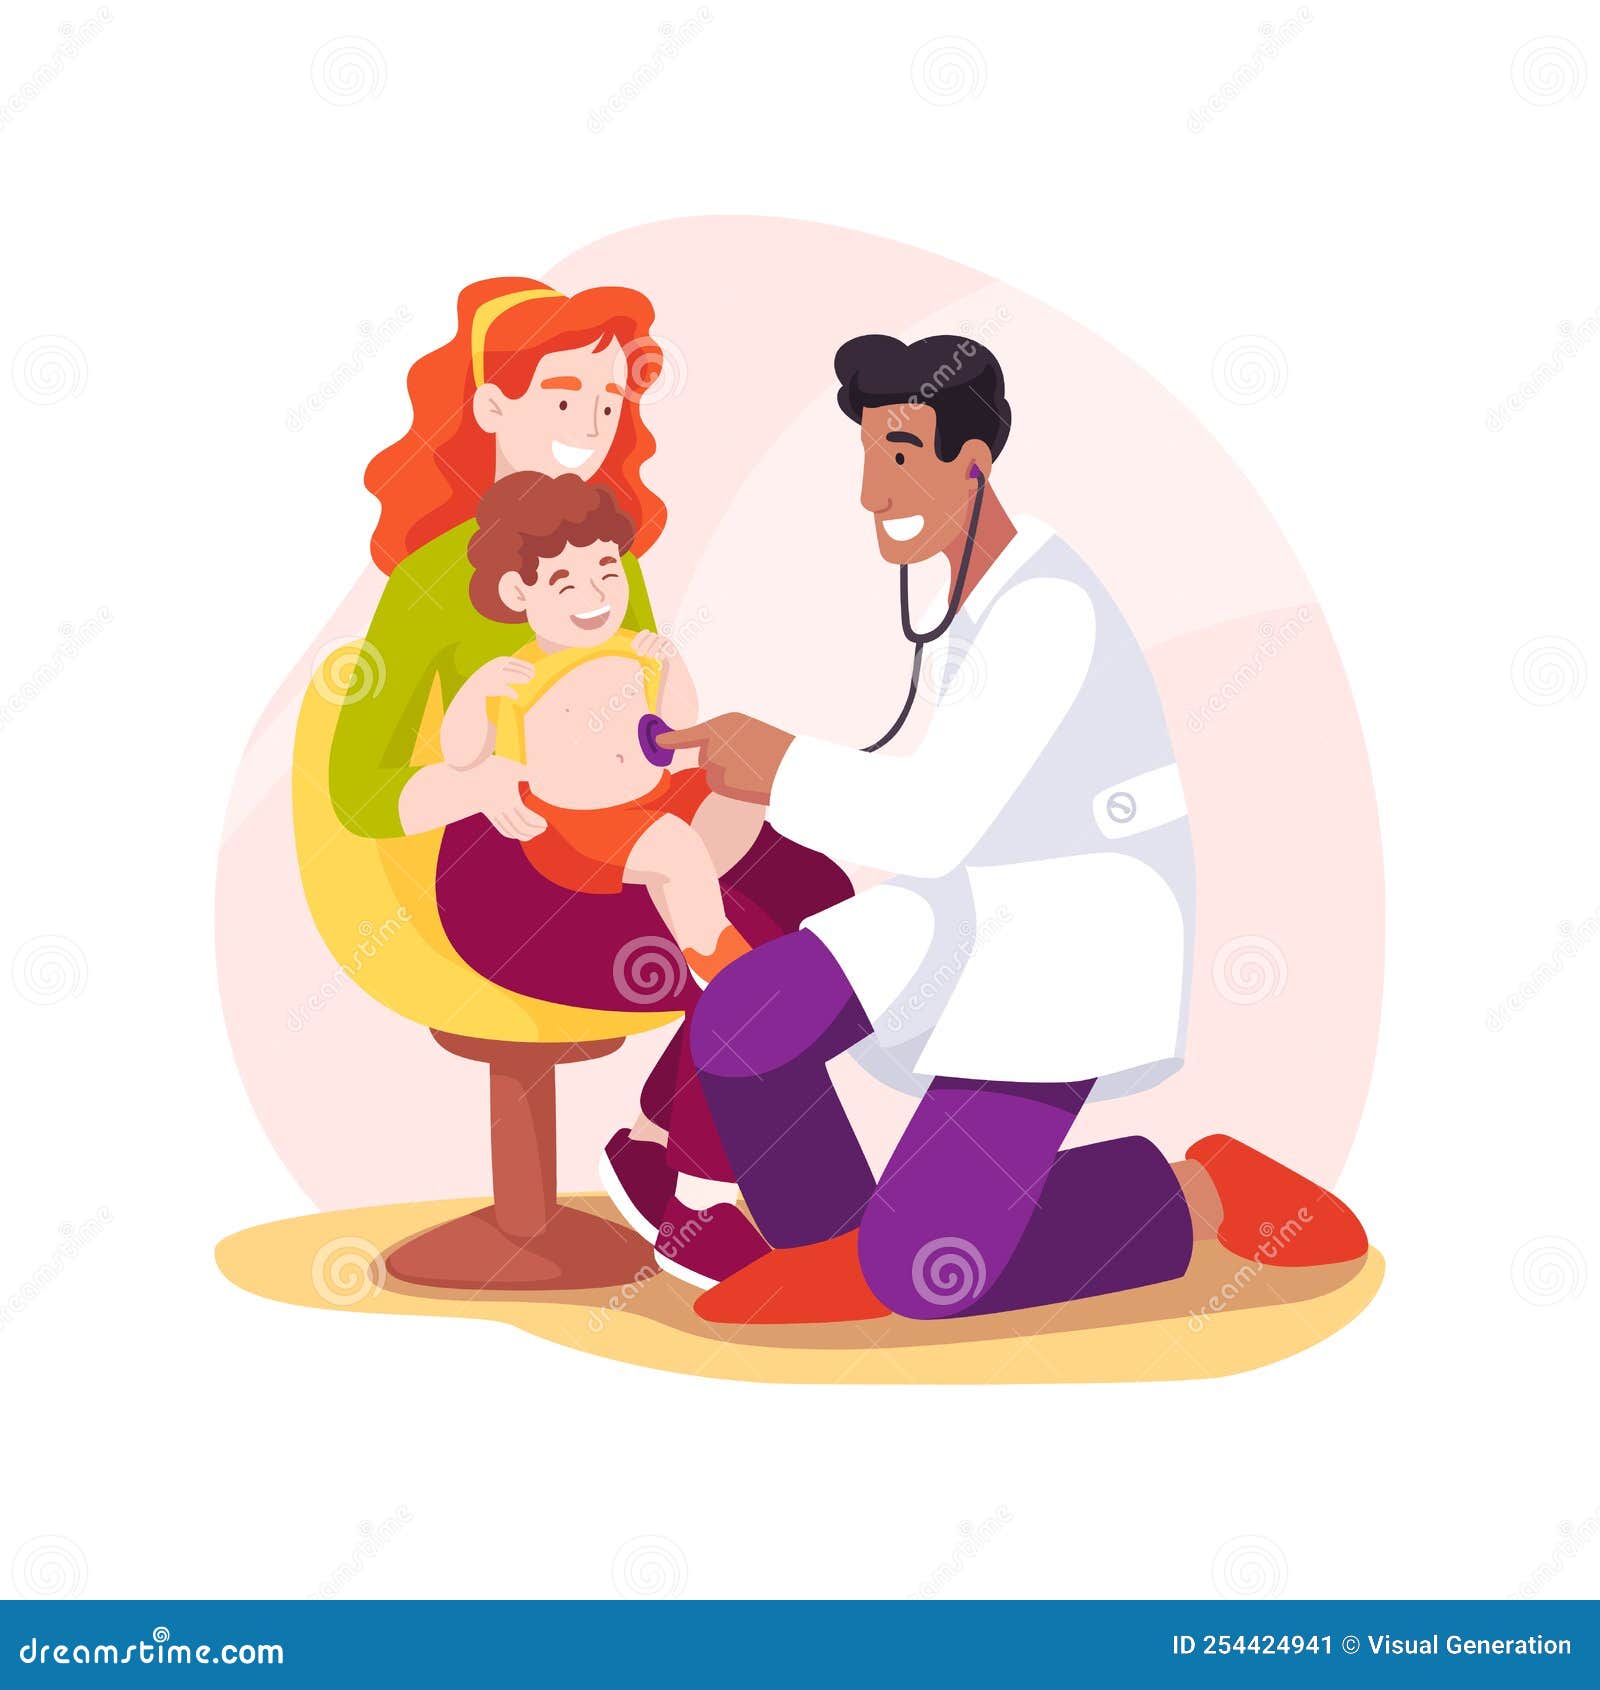 Vetores e ilustrações de Medico infantil para download gratuito